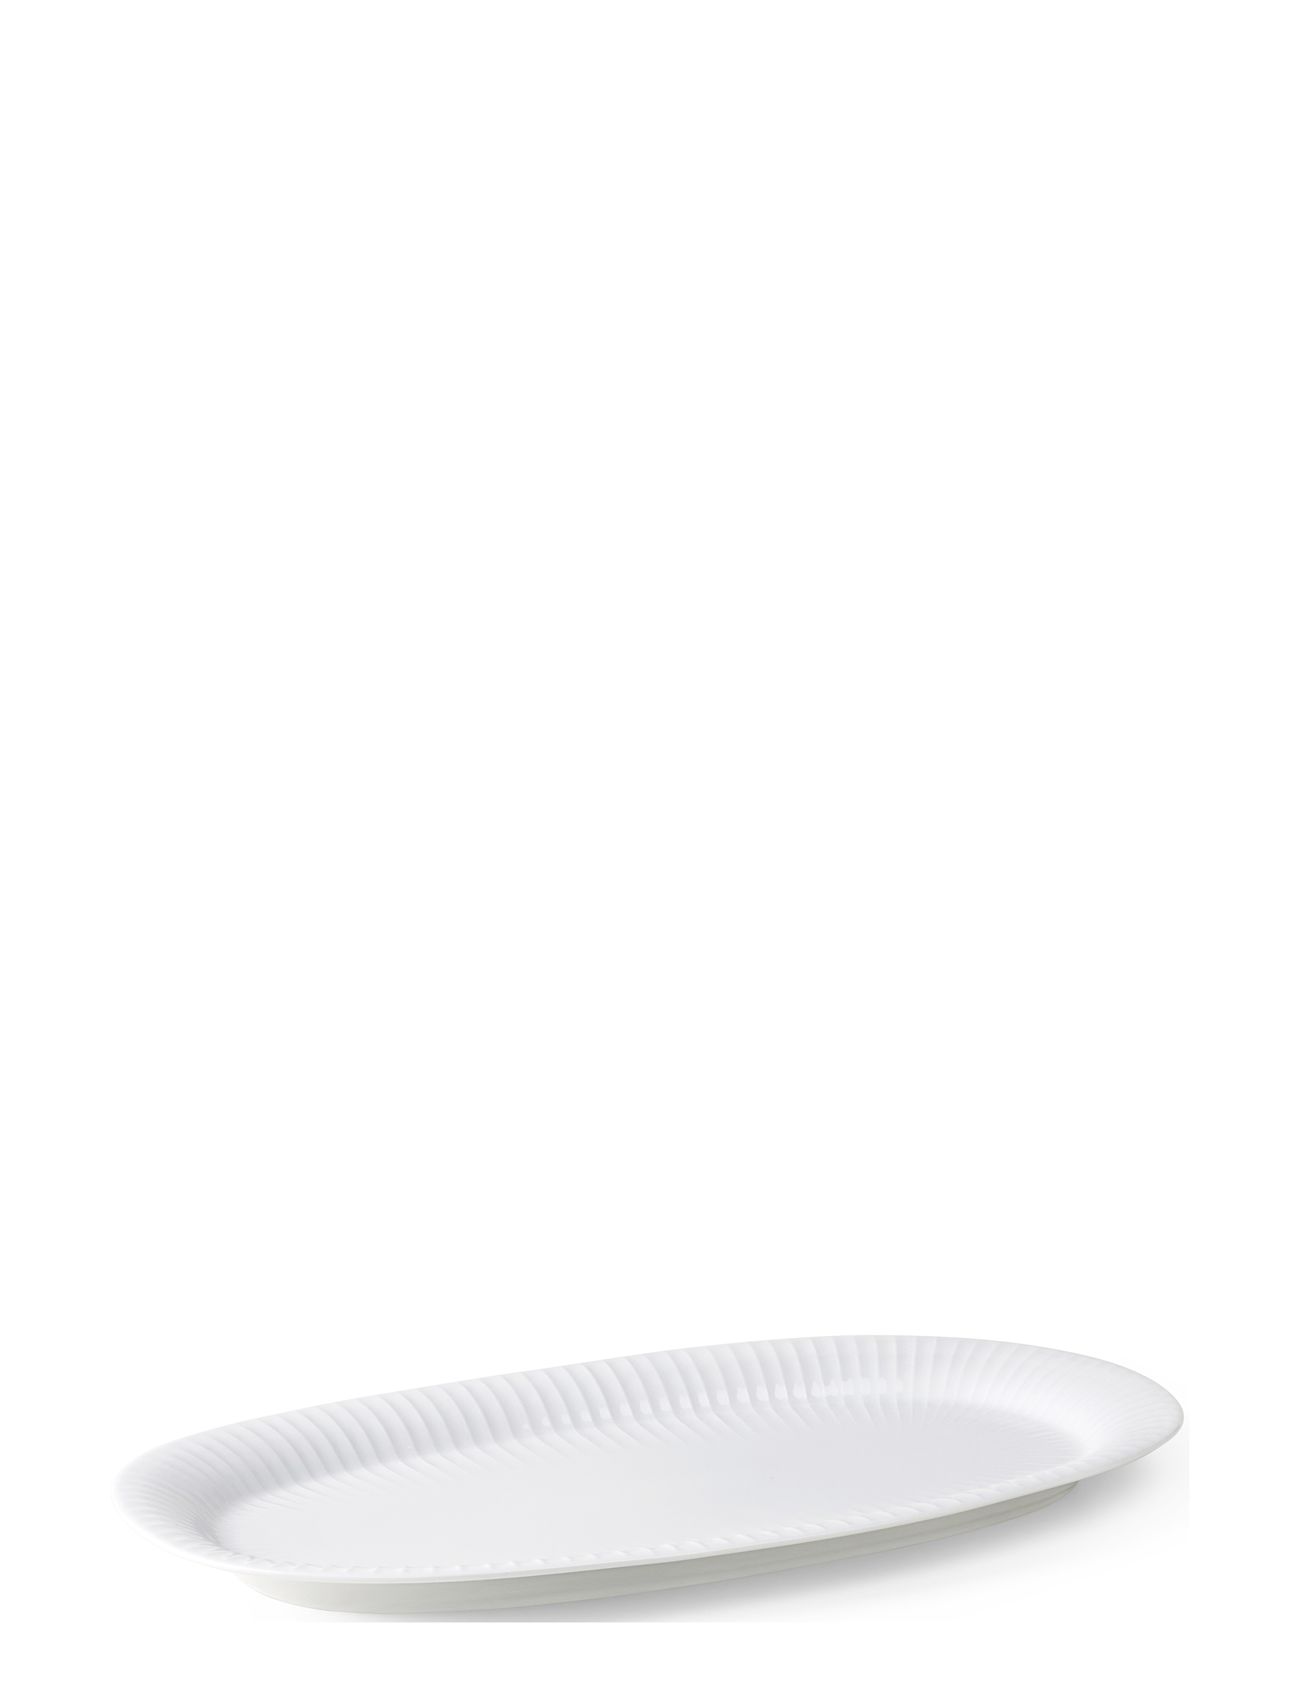 Hammershøi Ovalt Serveringsfad 40X22.5 Hvid Home Tableware Serving Dishes Serving Platters White Kähler